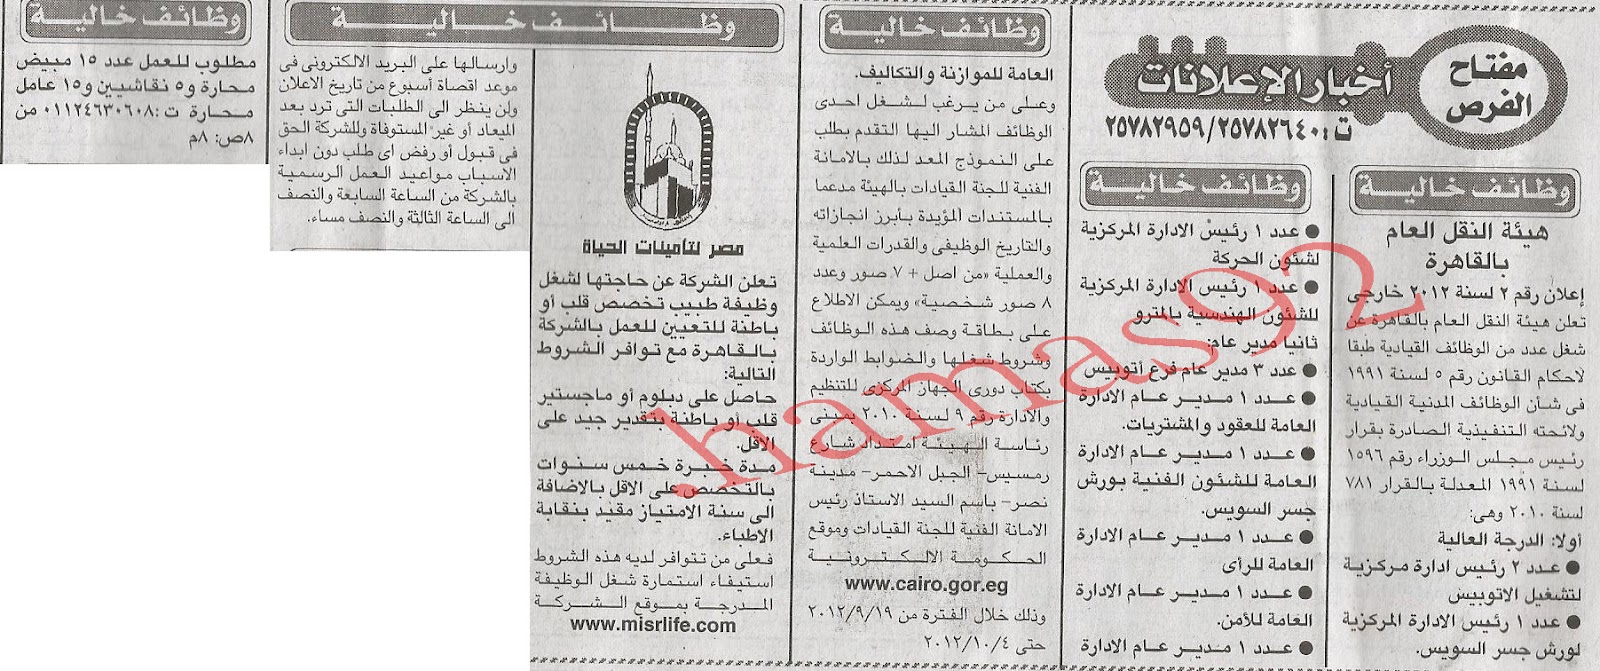 فرص عمل فى مصر الخميس 20 سبتمبر 2012  %D8%A7%D9%84%D8%A7%D8%AE%D8%A8%D8%A7%D8%B1+2